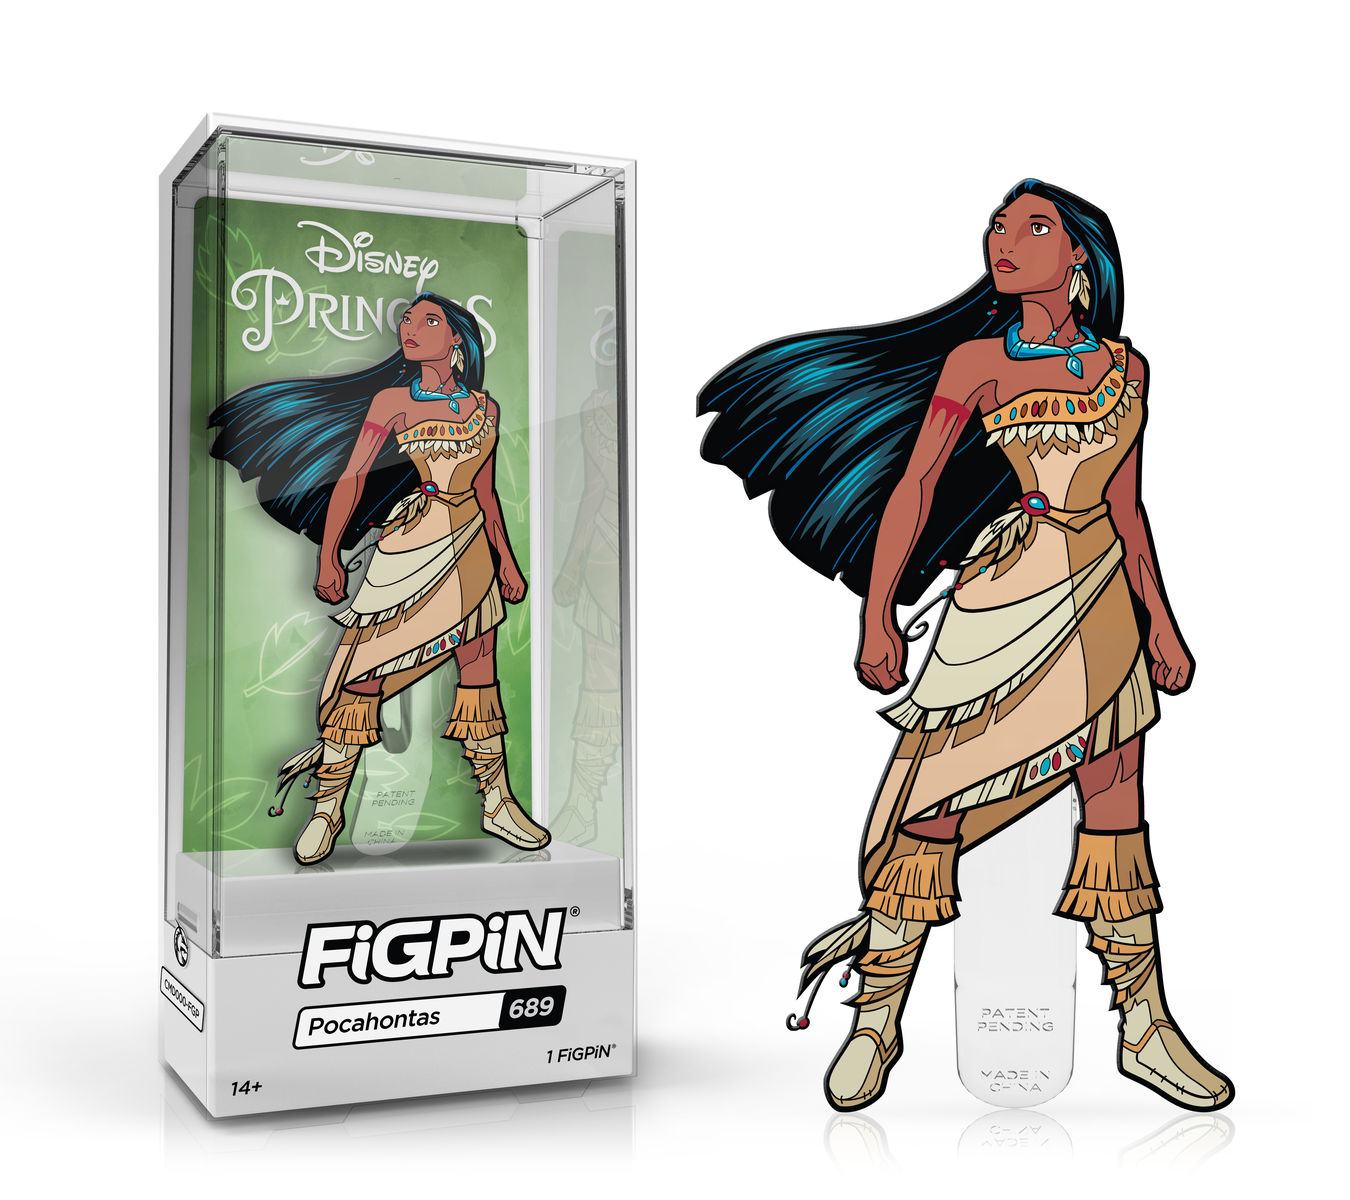 Pocahontas (689)